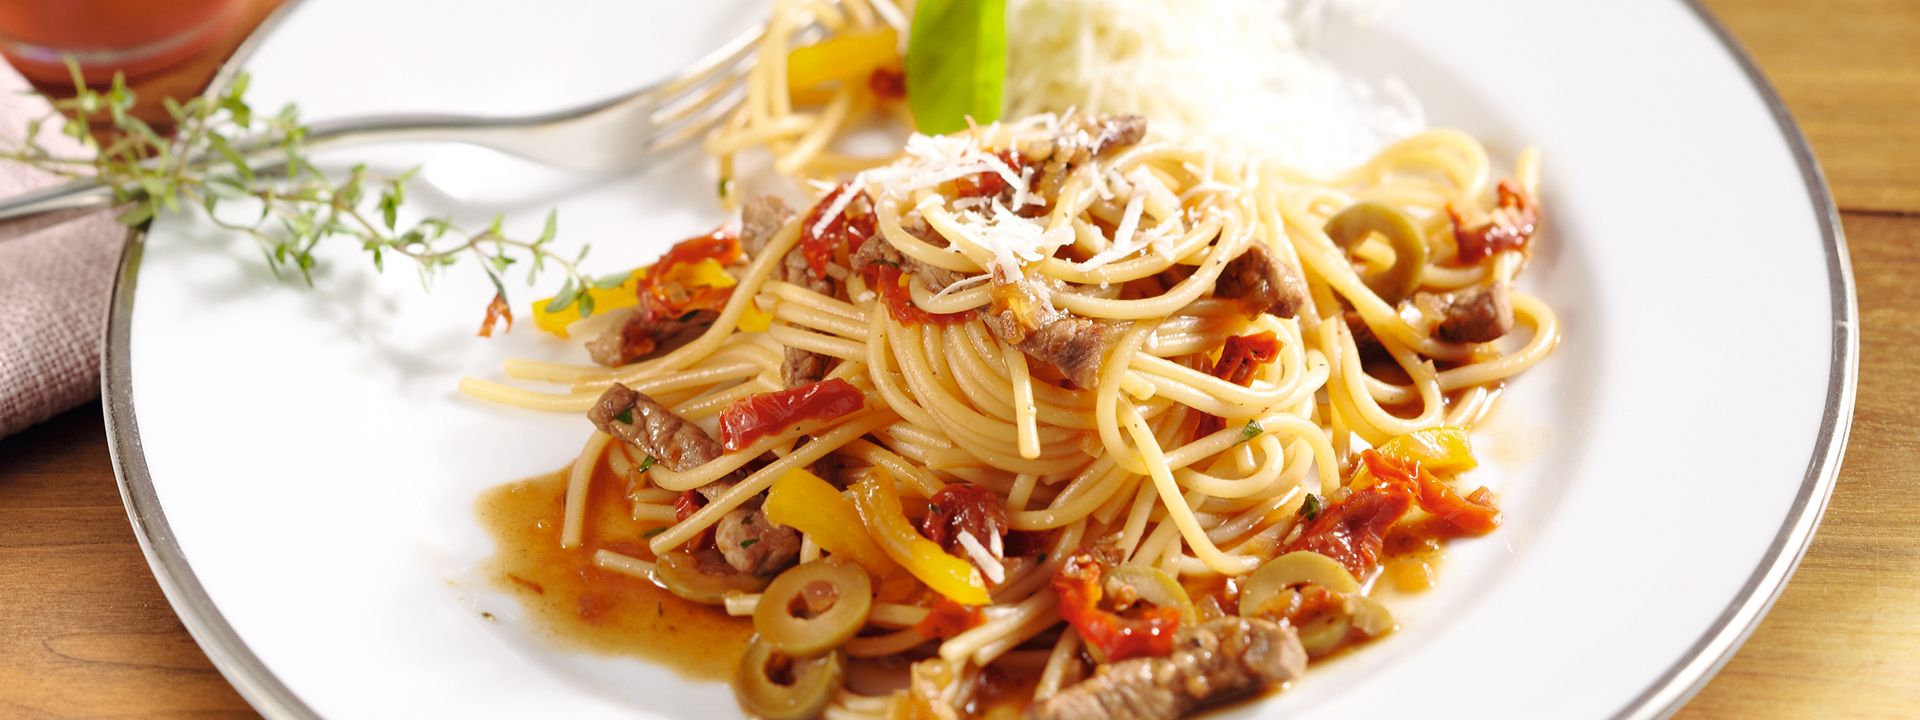 Angerichtes Gericht für das Rezept Spaghetti mit Roastbeef